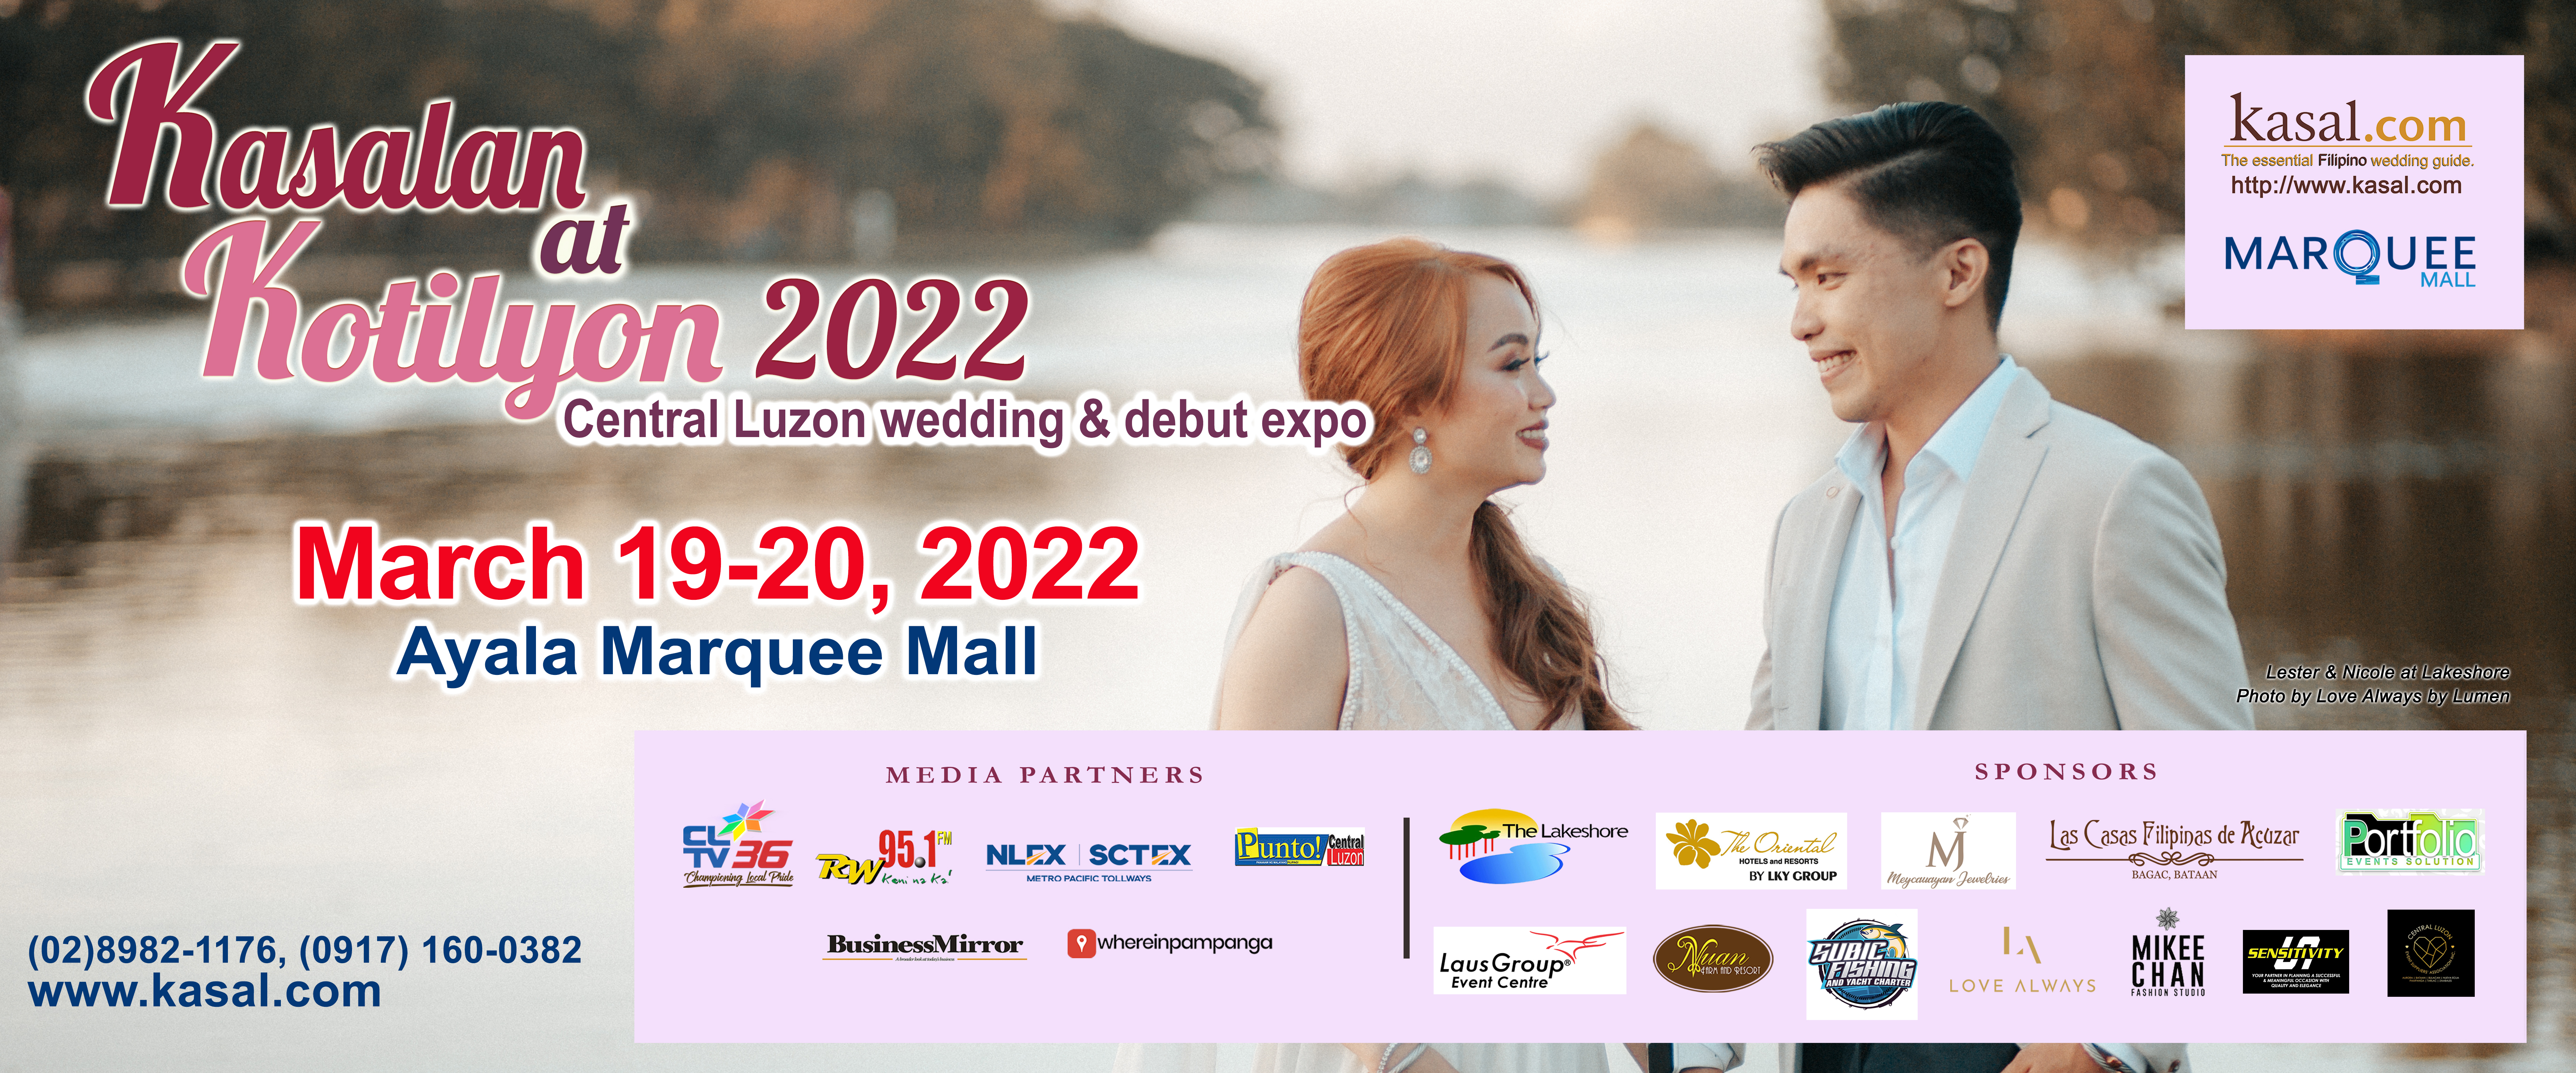 Kasalan2022 Central Luzon Wedding & Debut Expo